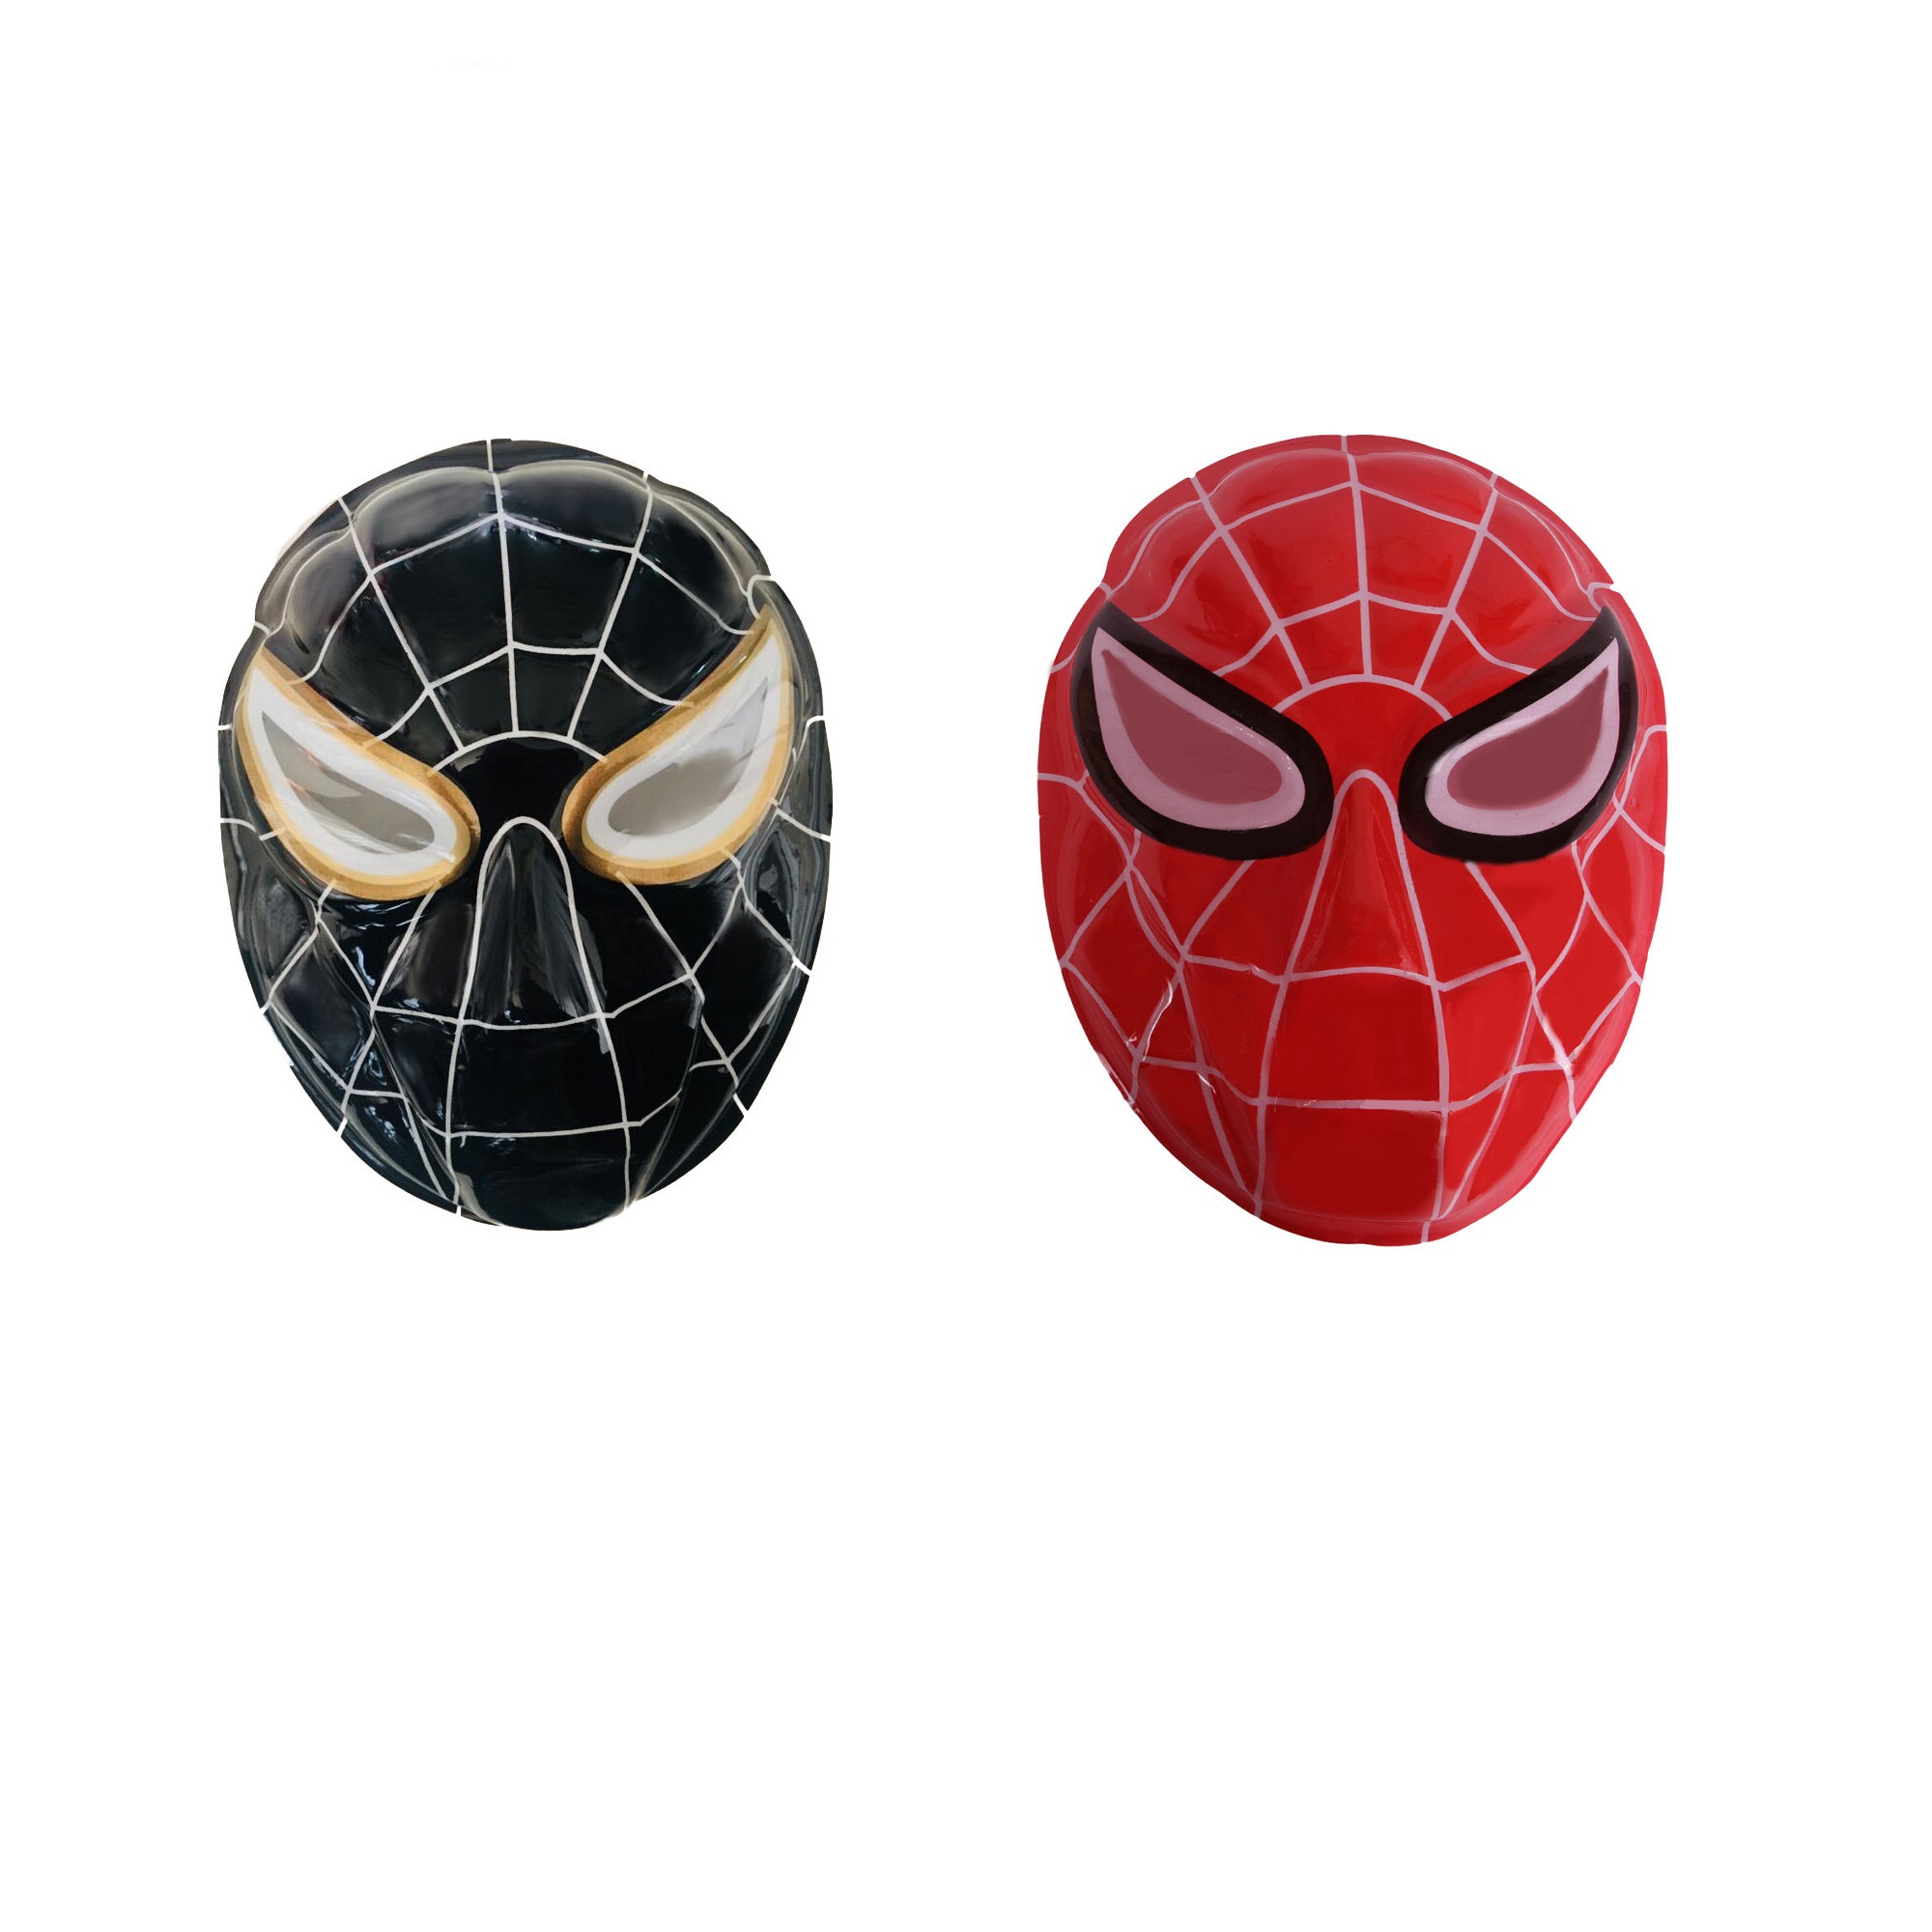 ماسک طرح مرد عنکبوتی مدل Spiderman-Black Red بسته 2 عددی